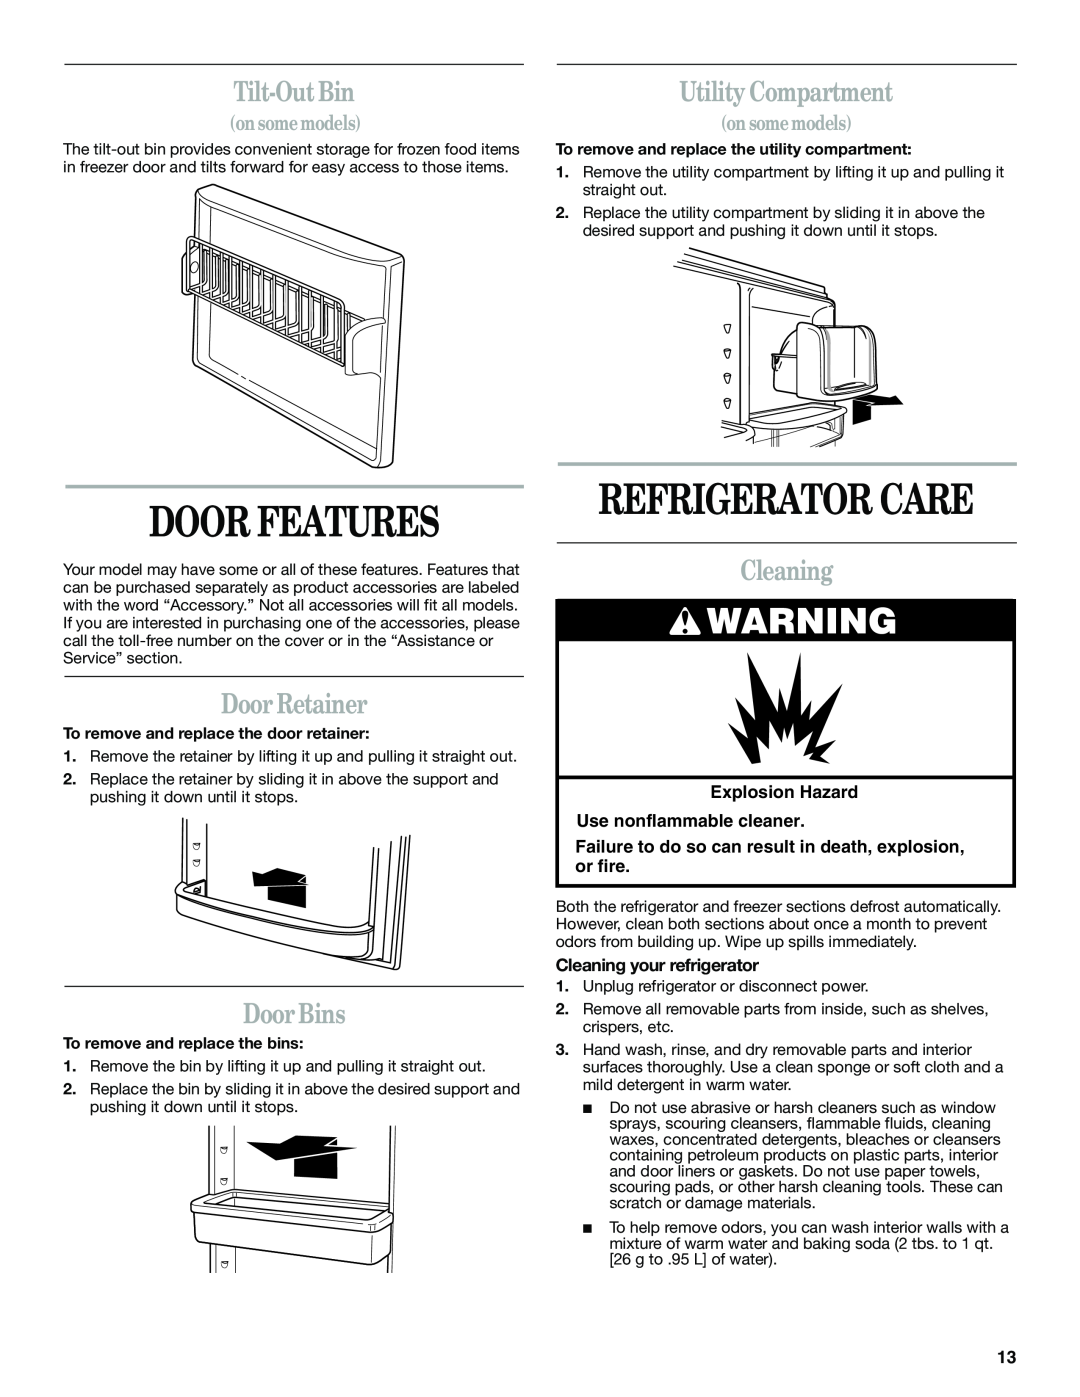 Whirlpool GB2SHKLLS00 manual Door Features, Refrigerator Care, Tilt-Out Bin, Utility Compartment, Door Retainer, Door Bins 